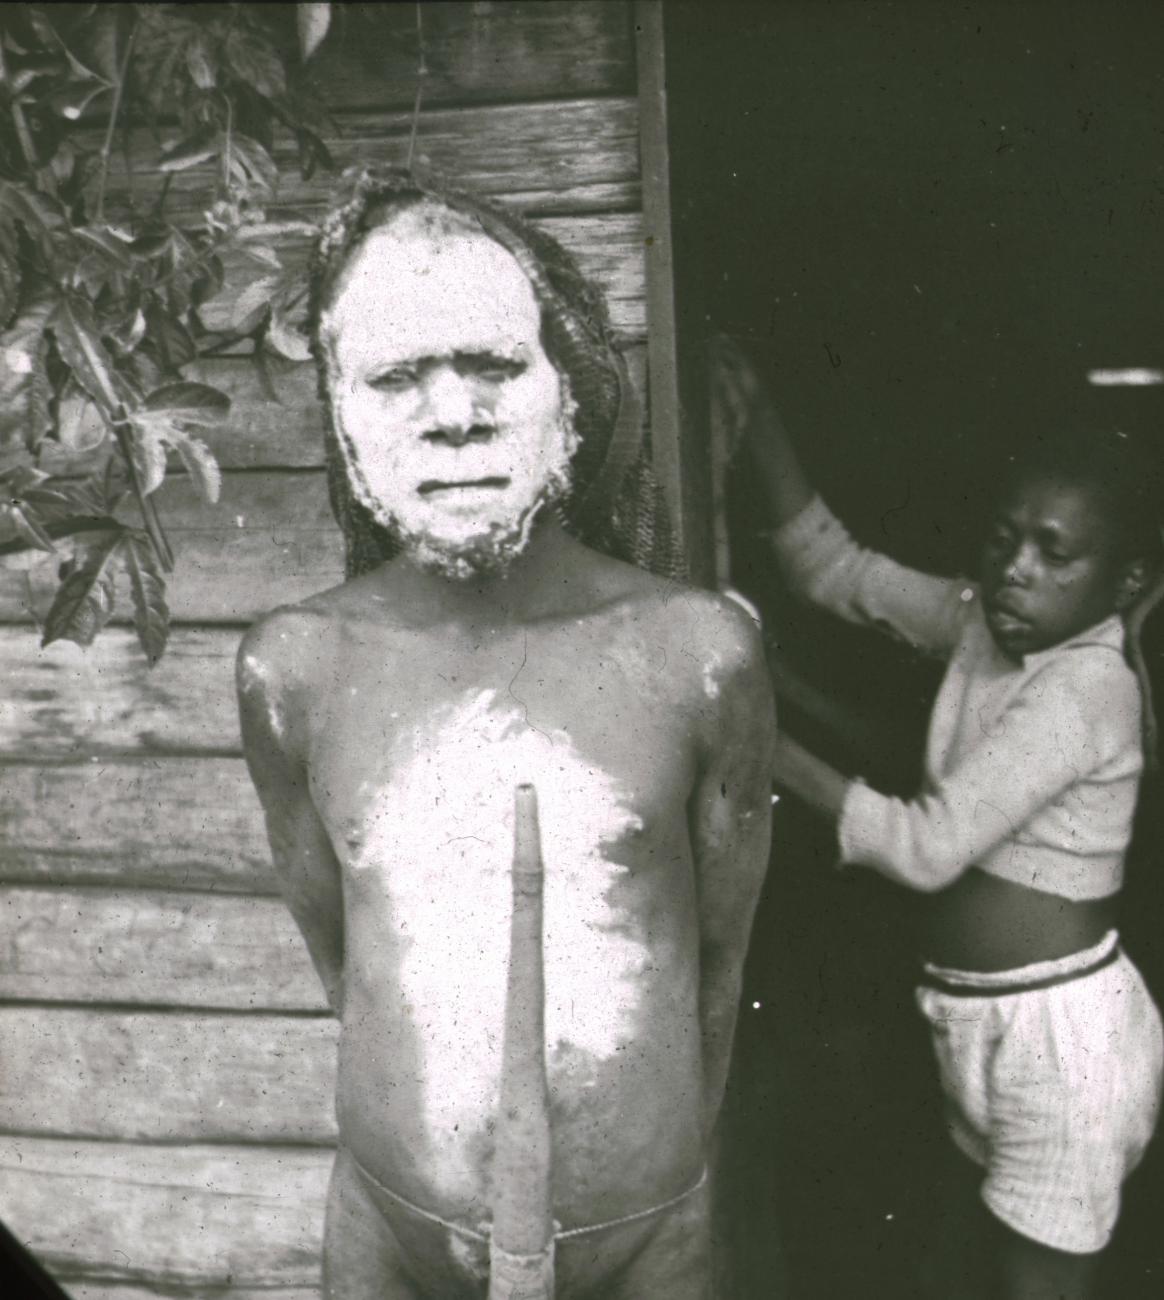 BD/329/17 - 
Portret van een Papoea-man met een peniskoker, met witbeschilderd gelaat en borst 
